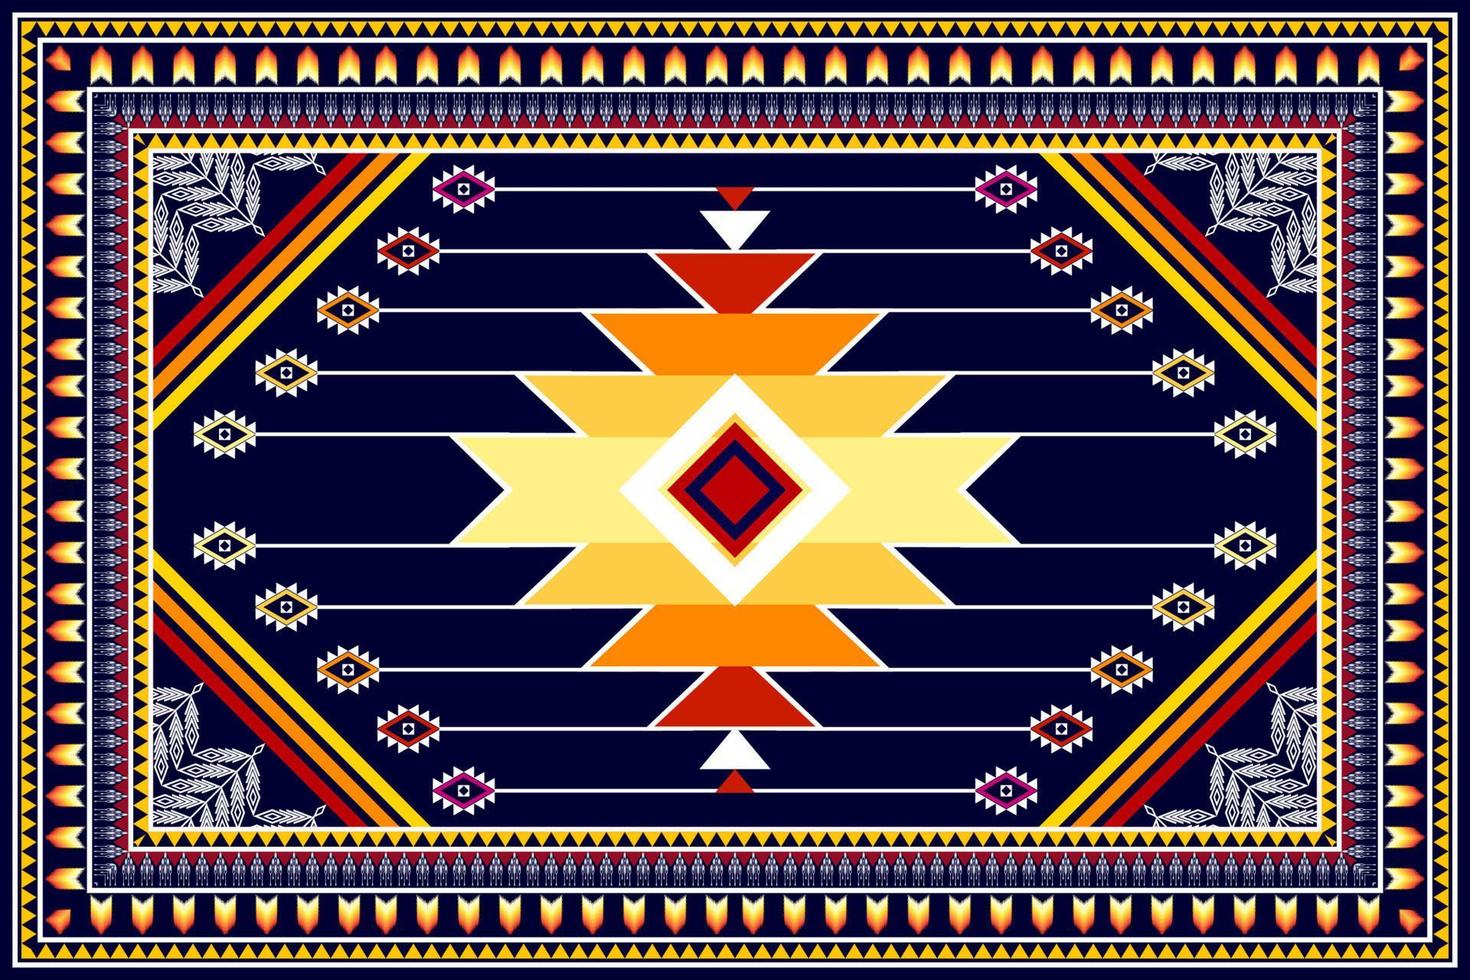 design de padrão étnico abstrato geométrico. tecido asteca tapete mandala ornamento étnico chevron têxtil decoração wallpaper. fundo de ilustrações vetoriais de bordado tradicional boho tribal tribal vetor